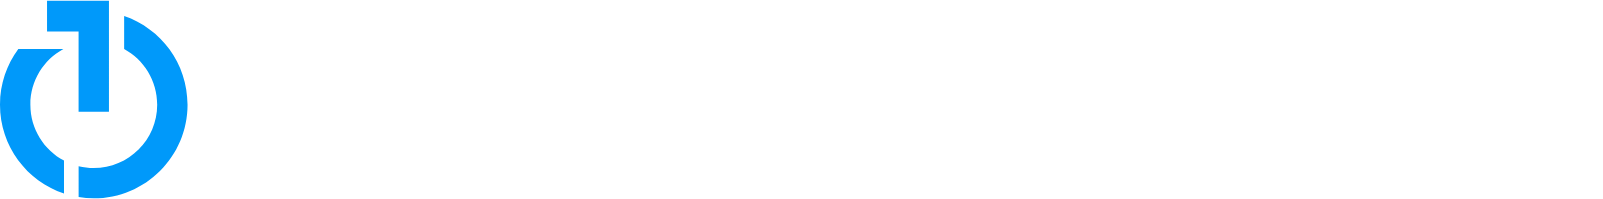 The Trade Desk
 logo large for dark backgrounds (transparent PNG)